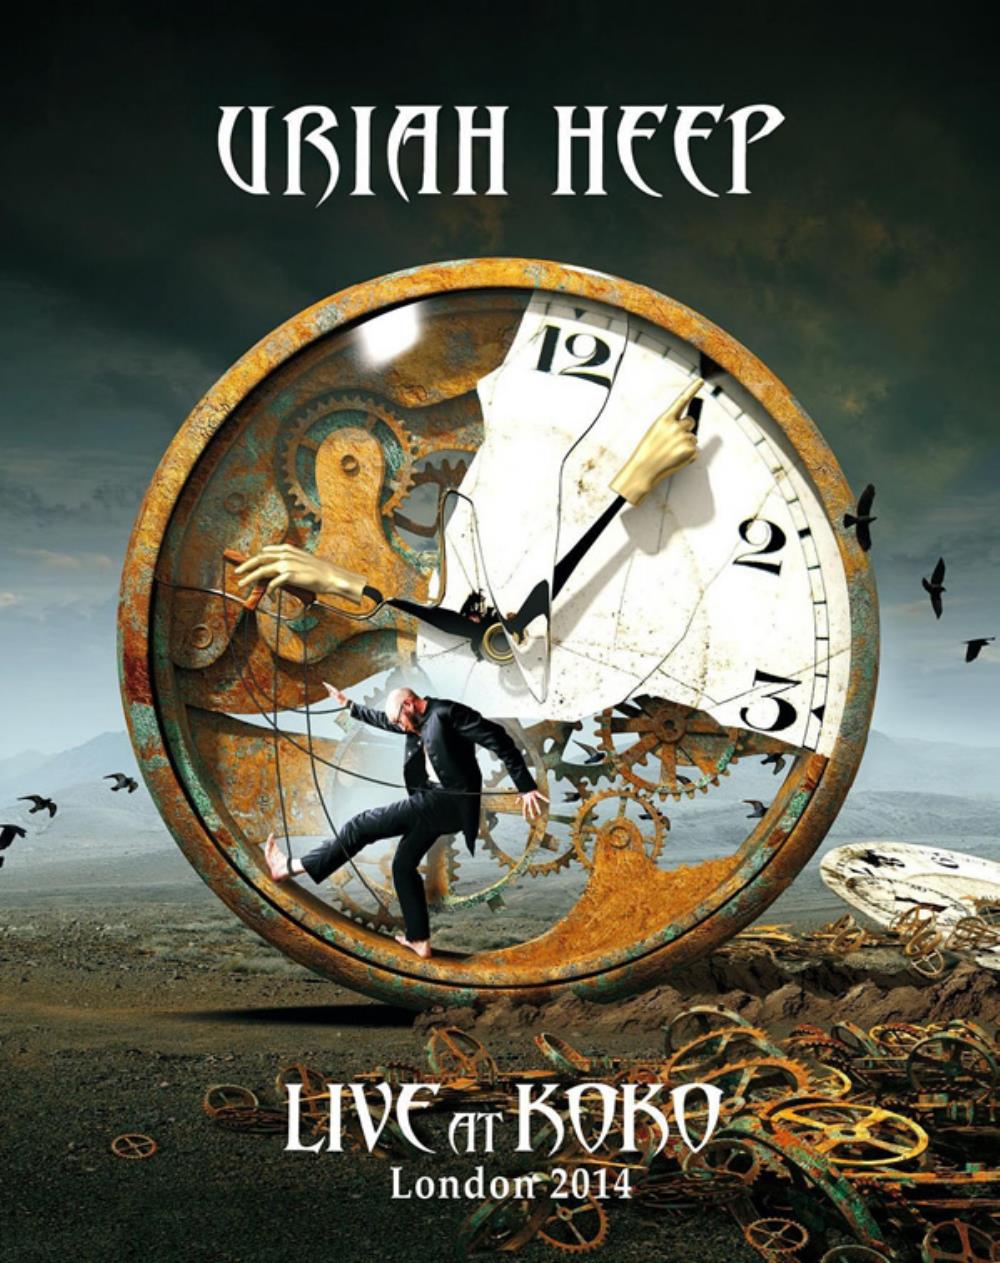 Uriah Heep - Live At Koko - London 2014 CD (album) cover